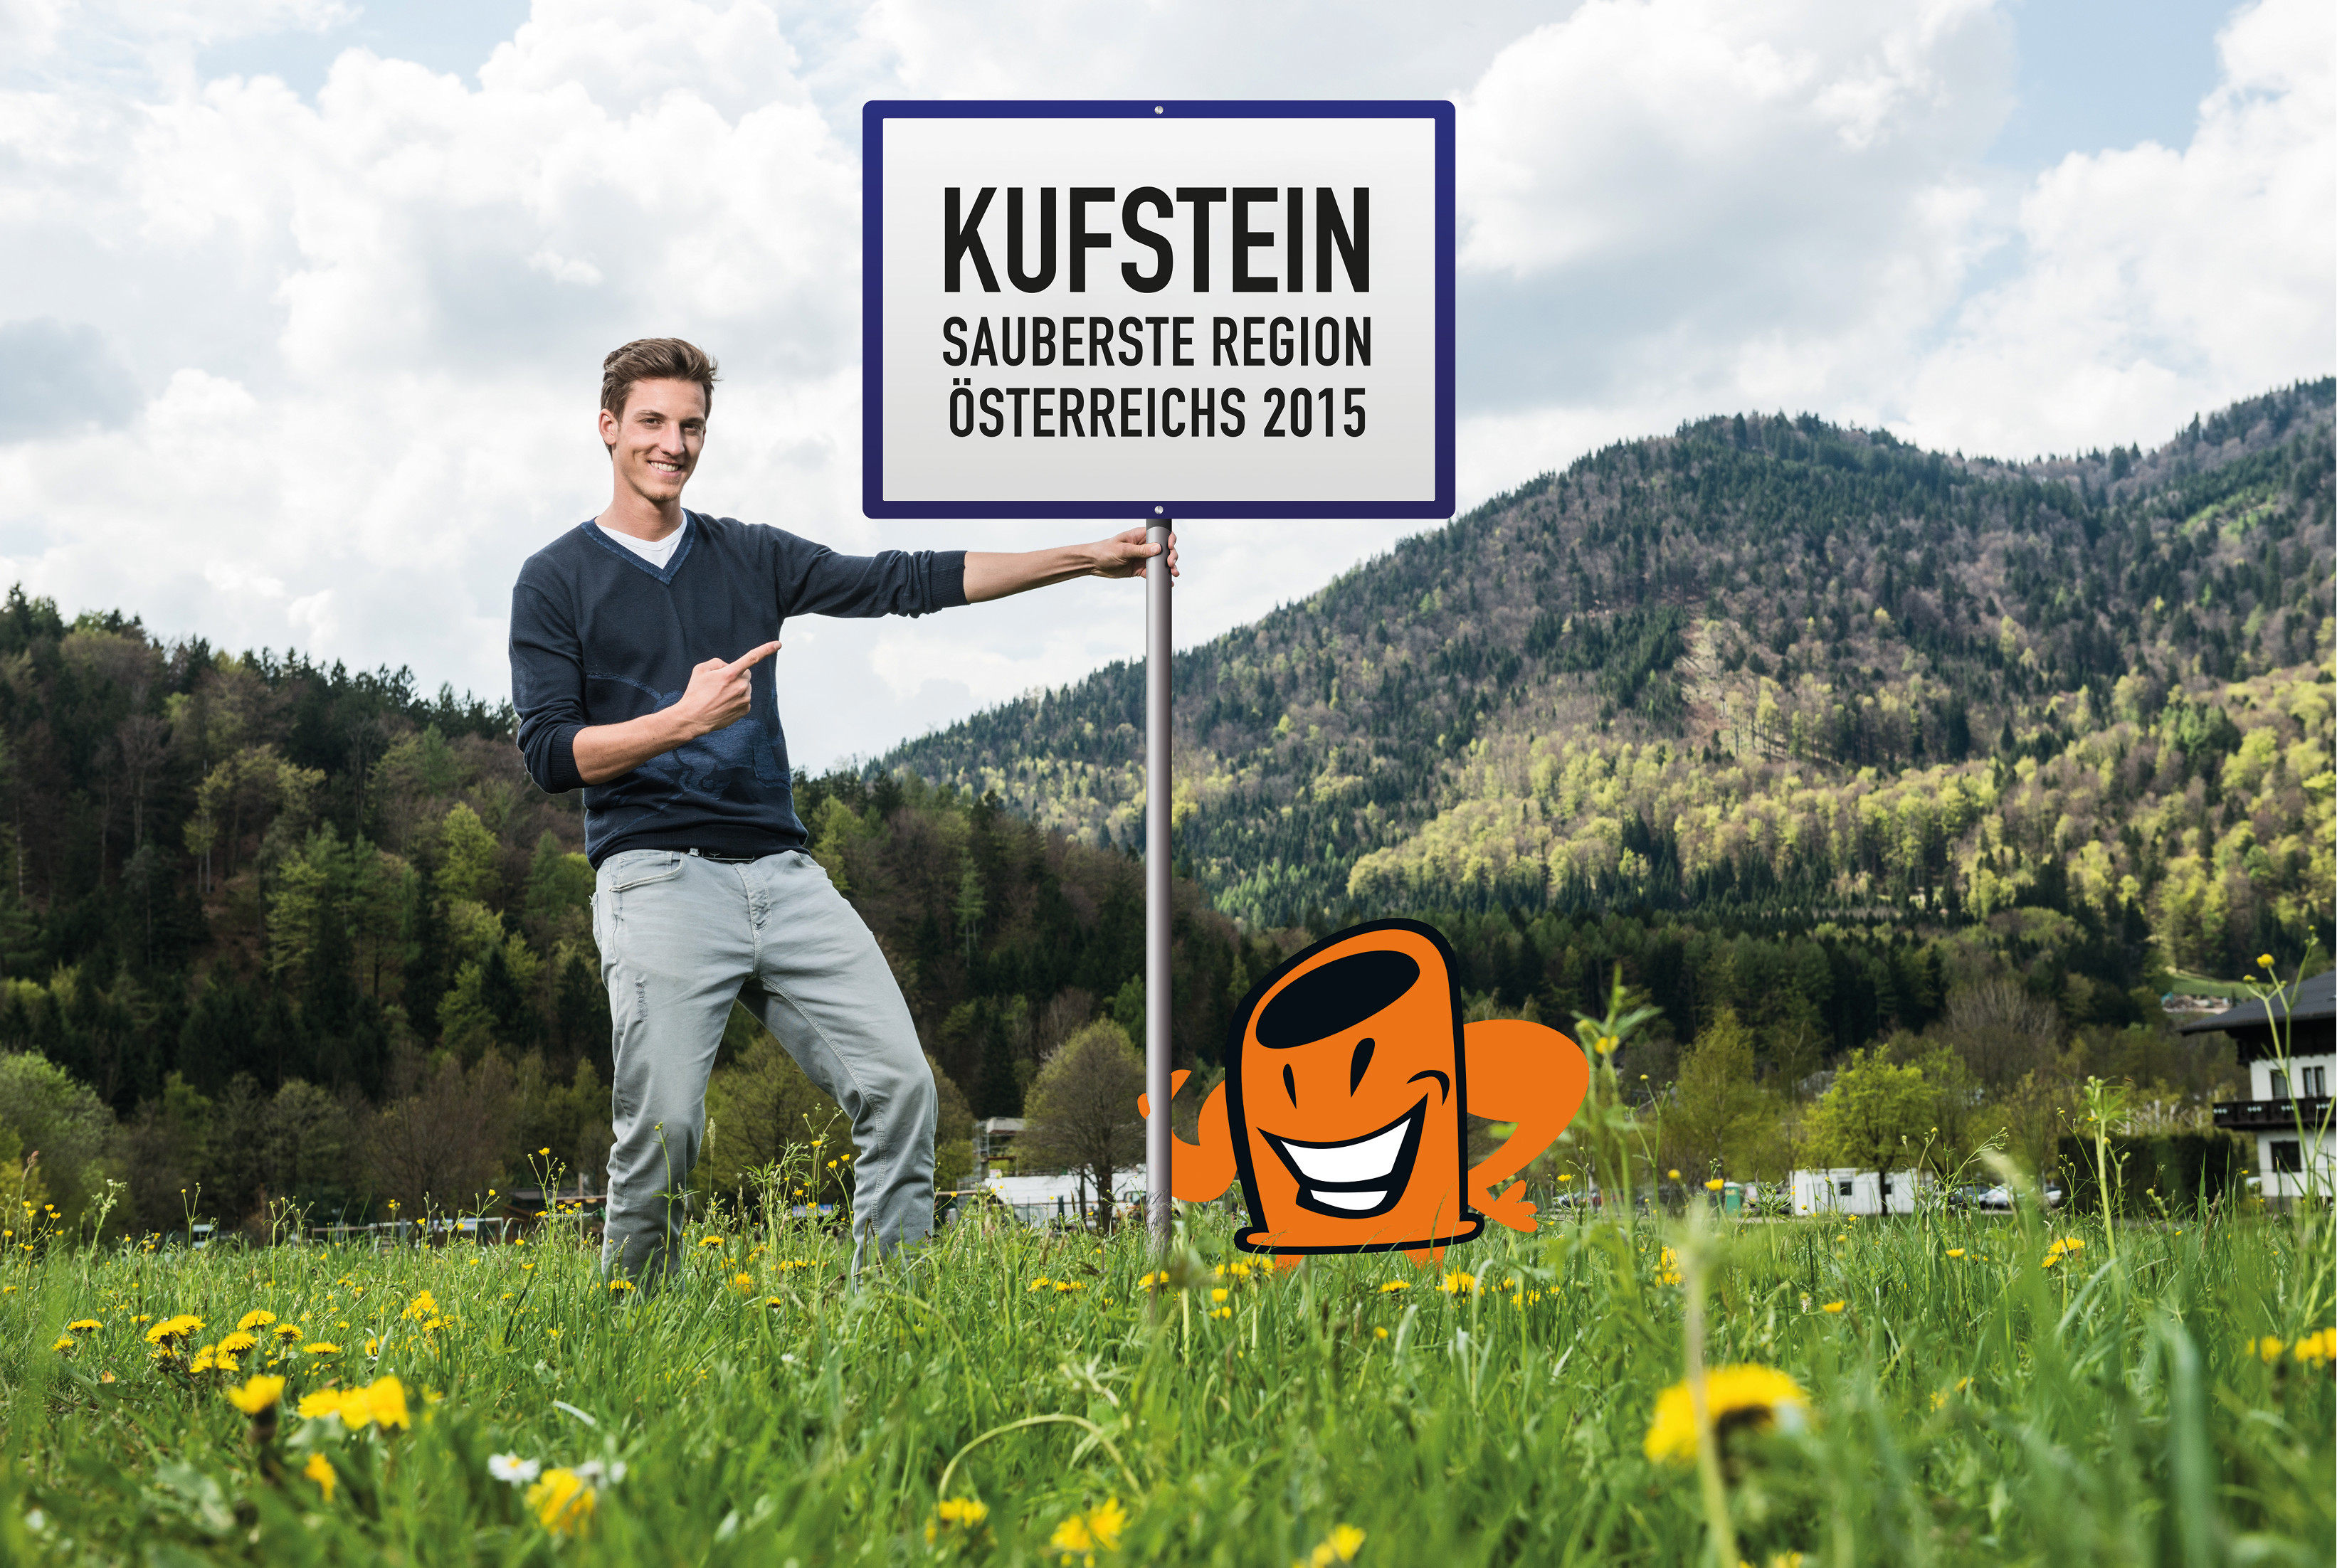 Sauberste Region Kufstein